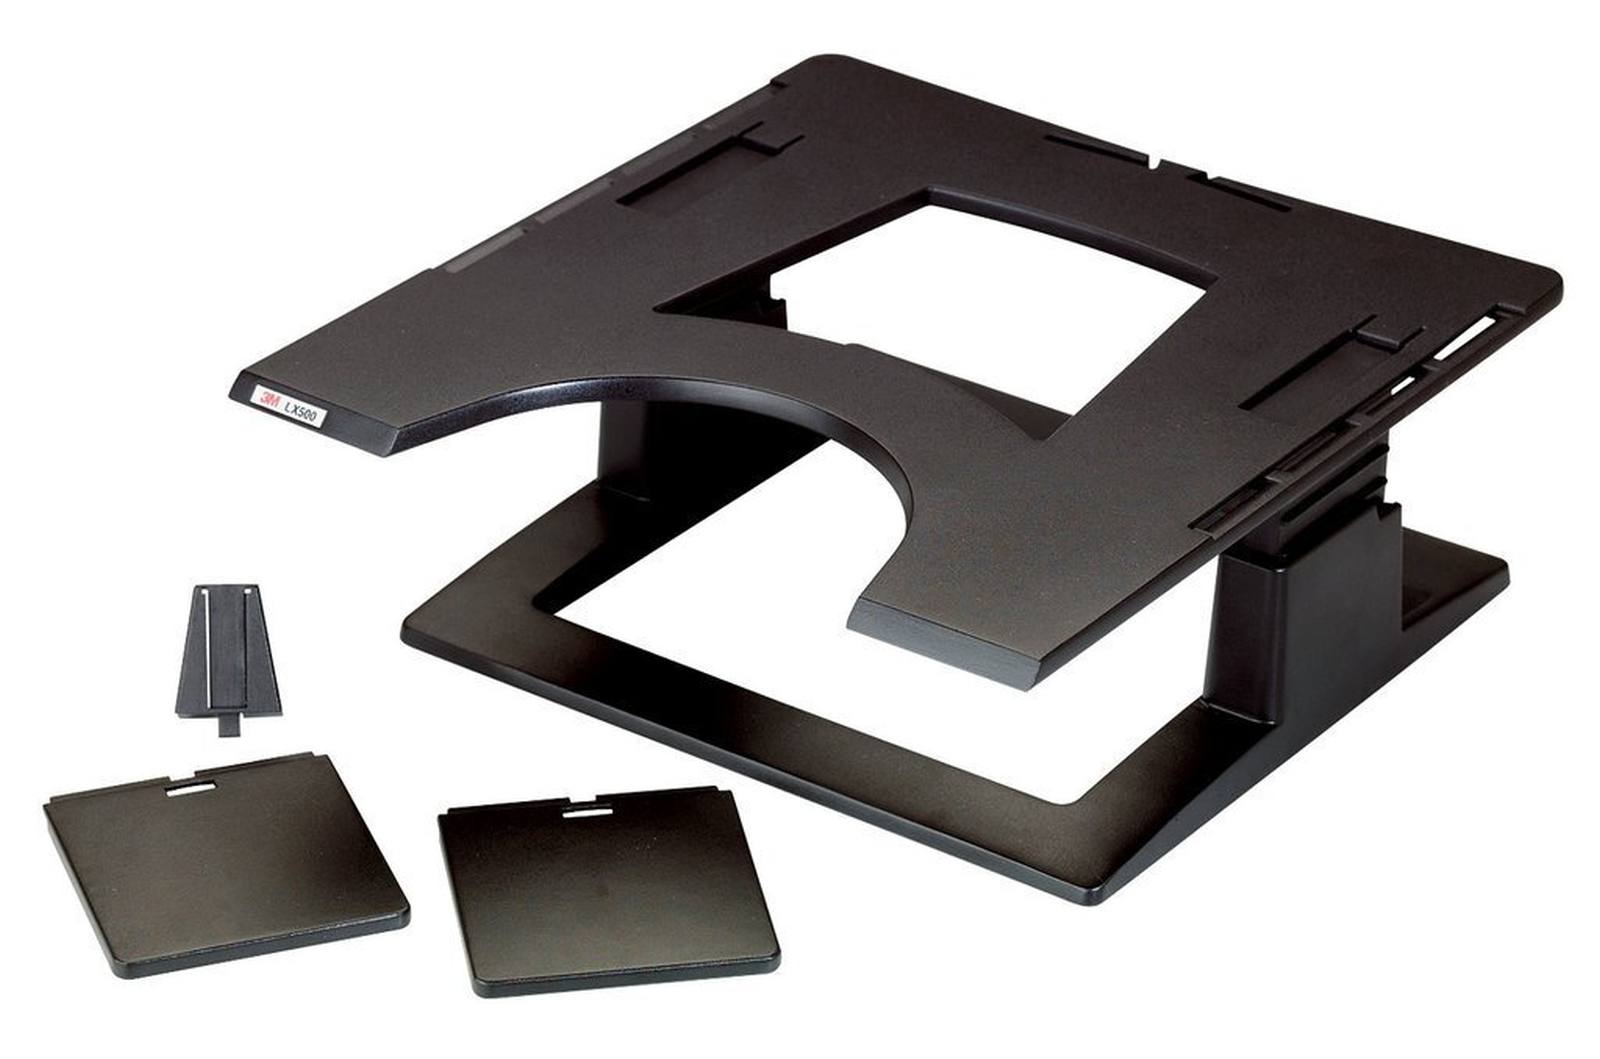 3M Notebookstandaard LX500, 32,0 cm x 32,0 cm x 10,2 - 15,2 cm, zwart, 1 notebookstandaard